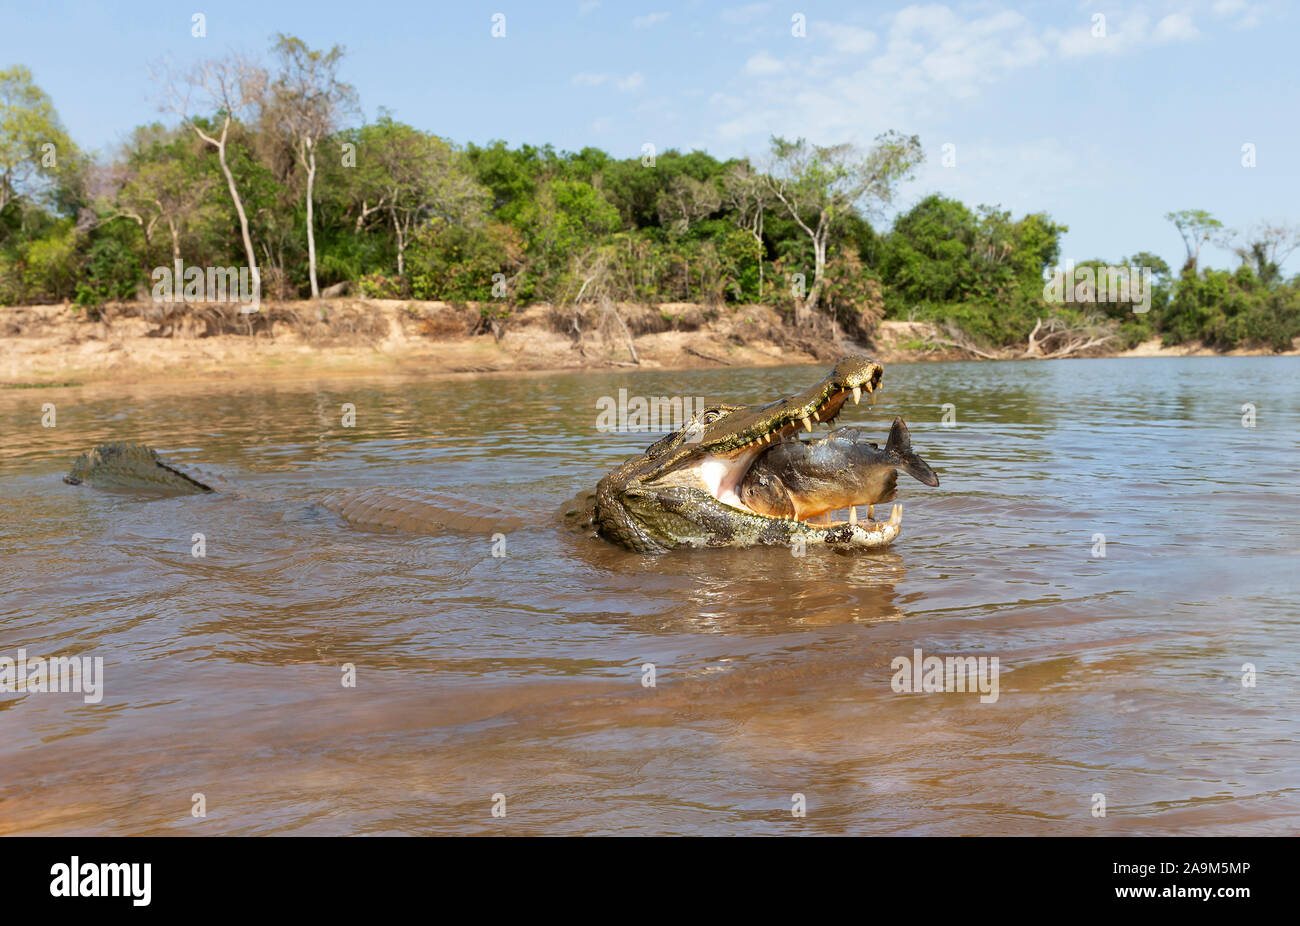 Close up of a Yacare caiman (Caiman yacare) eating piranha, South Pantanal, Brazil. Stock Photo